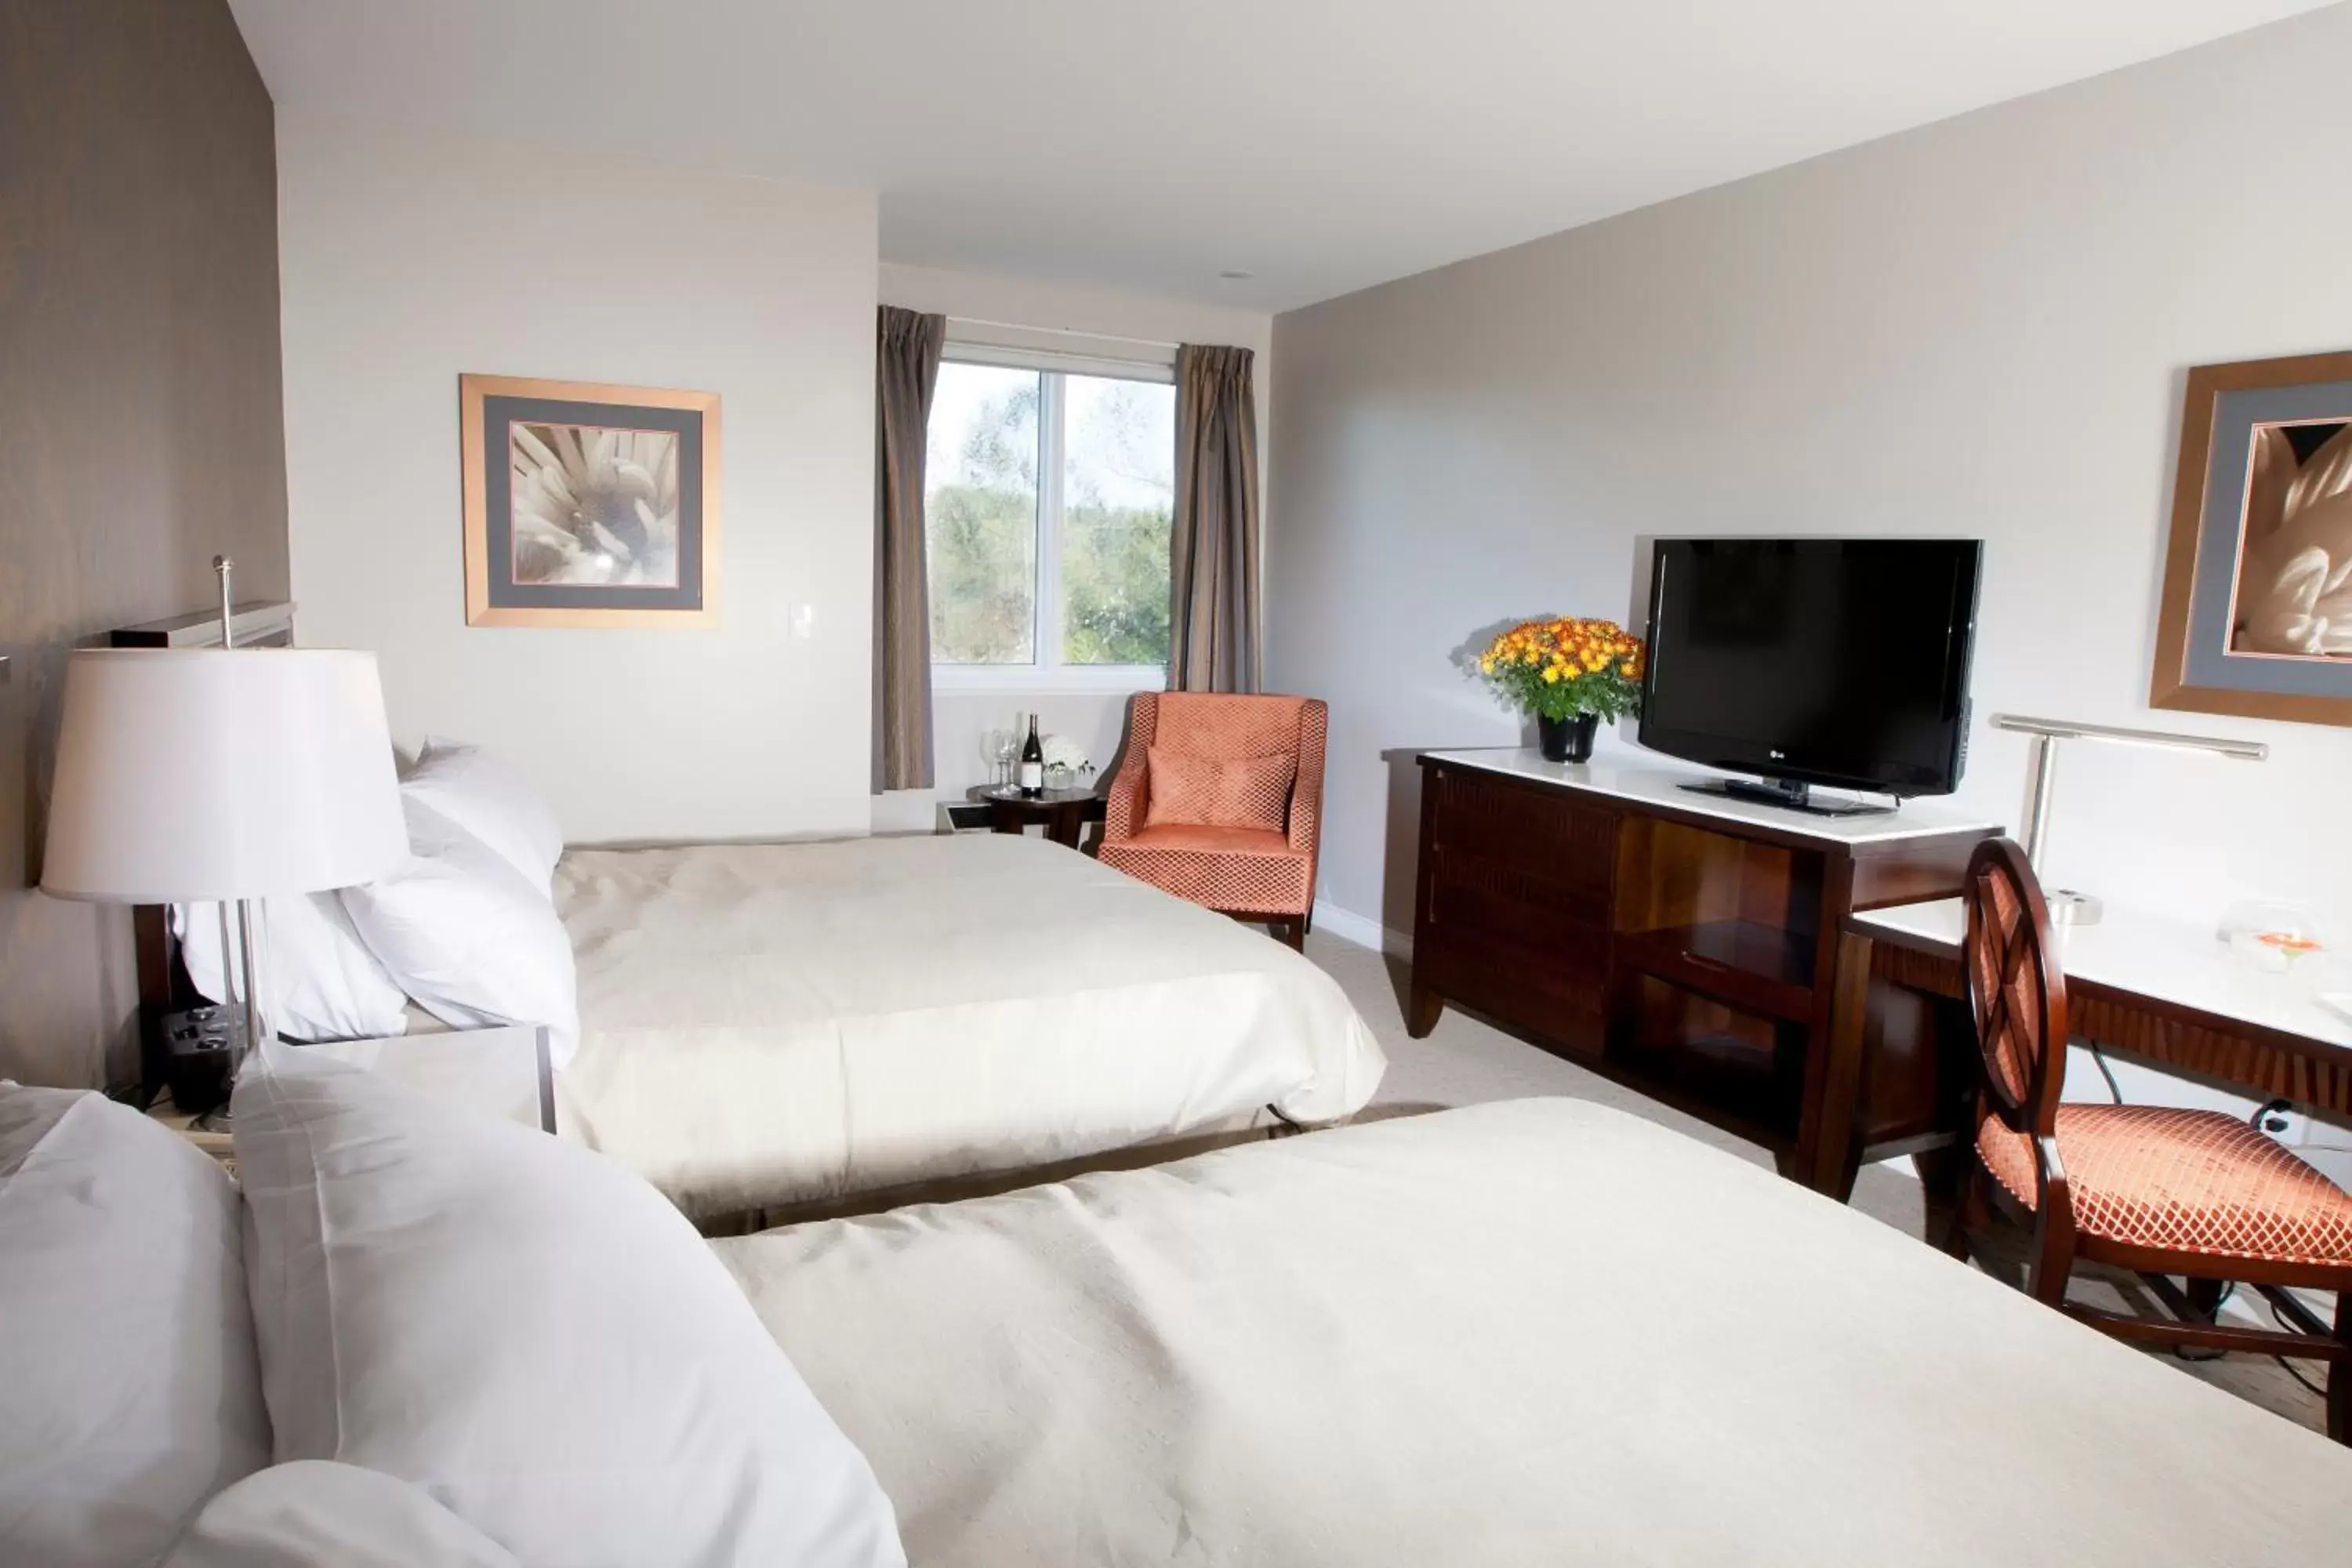 Bed in Elmhurst Inn & Spa